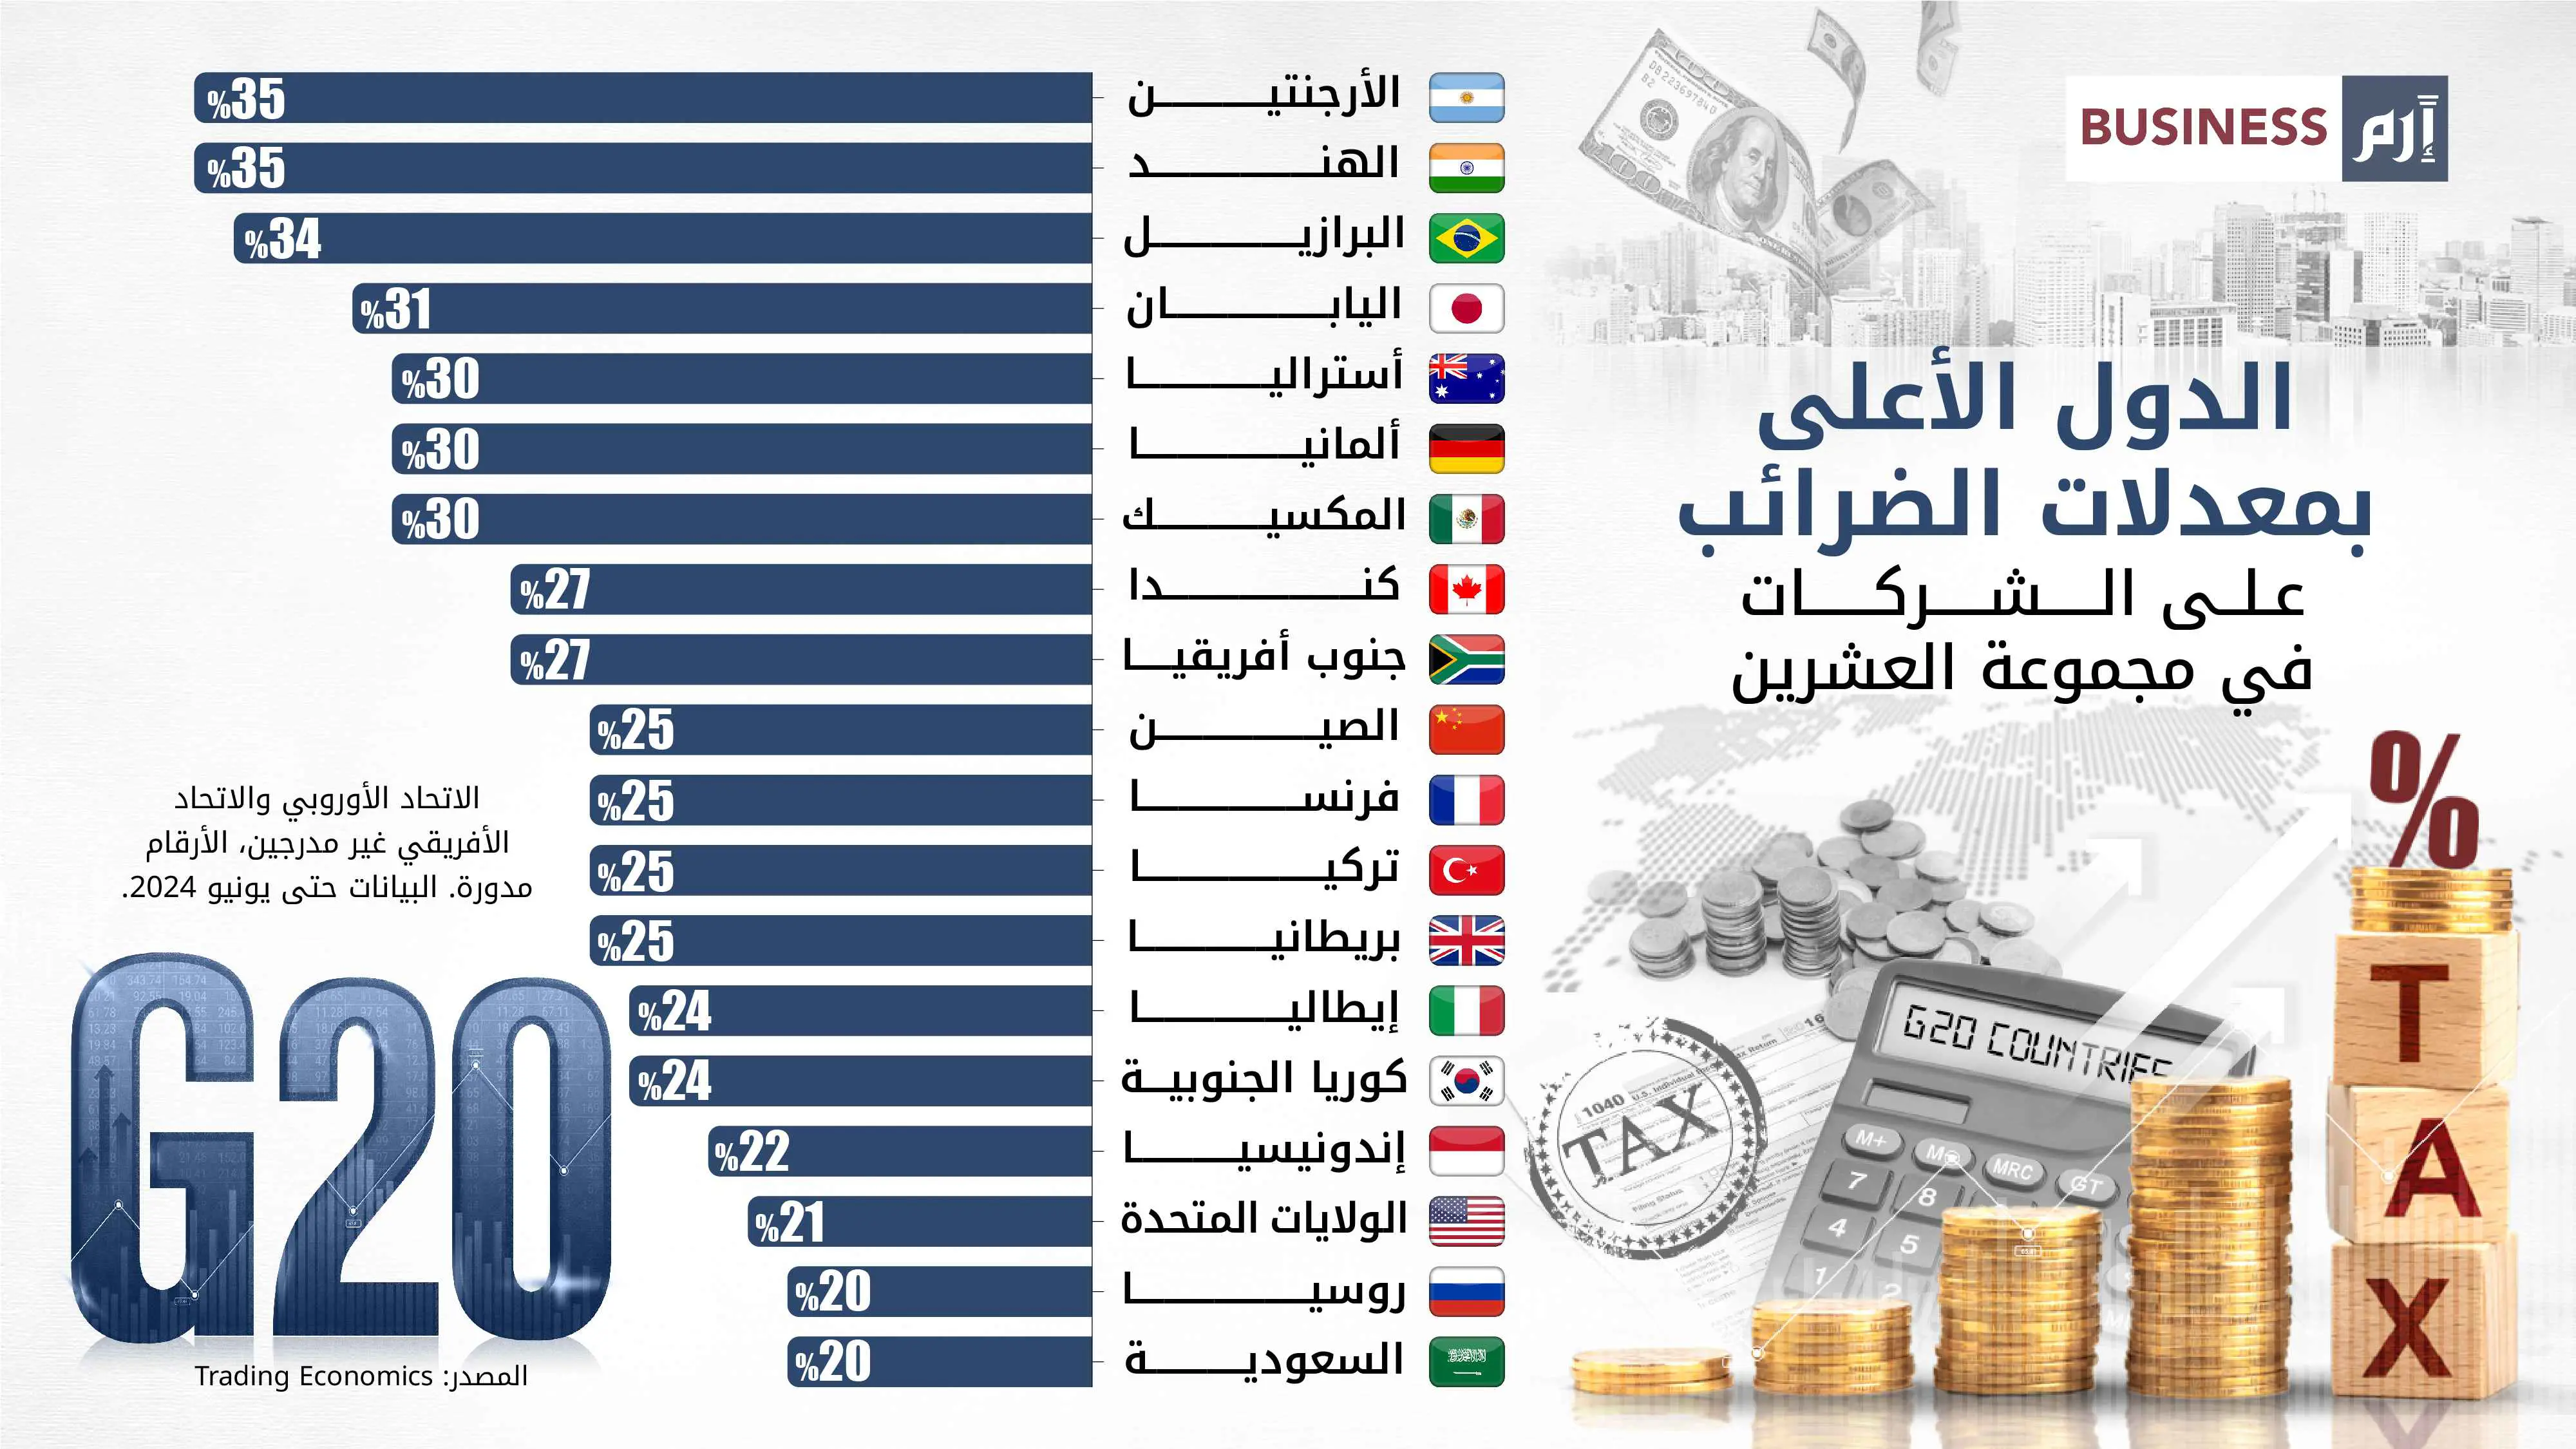 الدول الأعلى بمعدلات الضرائب على الشركات في مجموعة العشرين